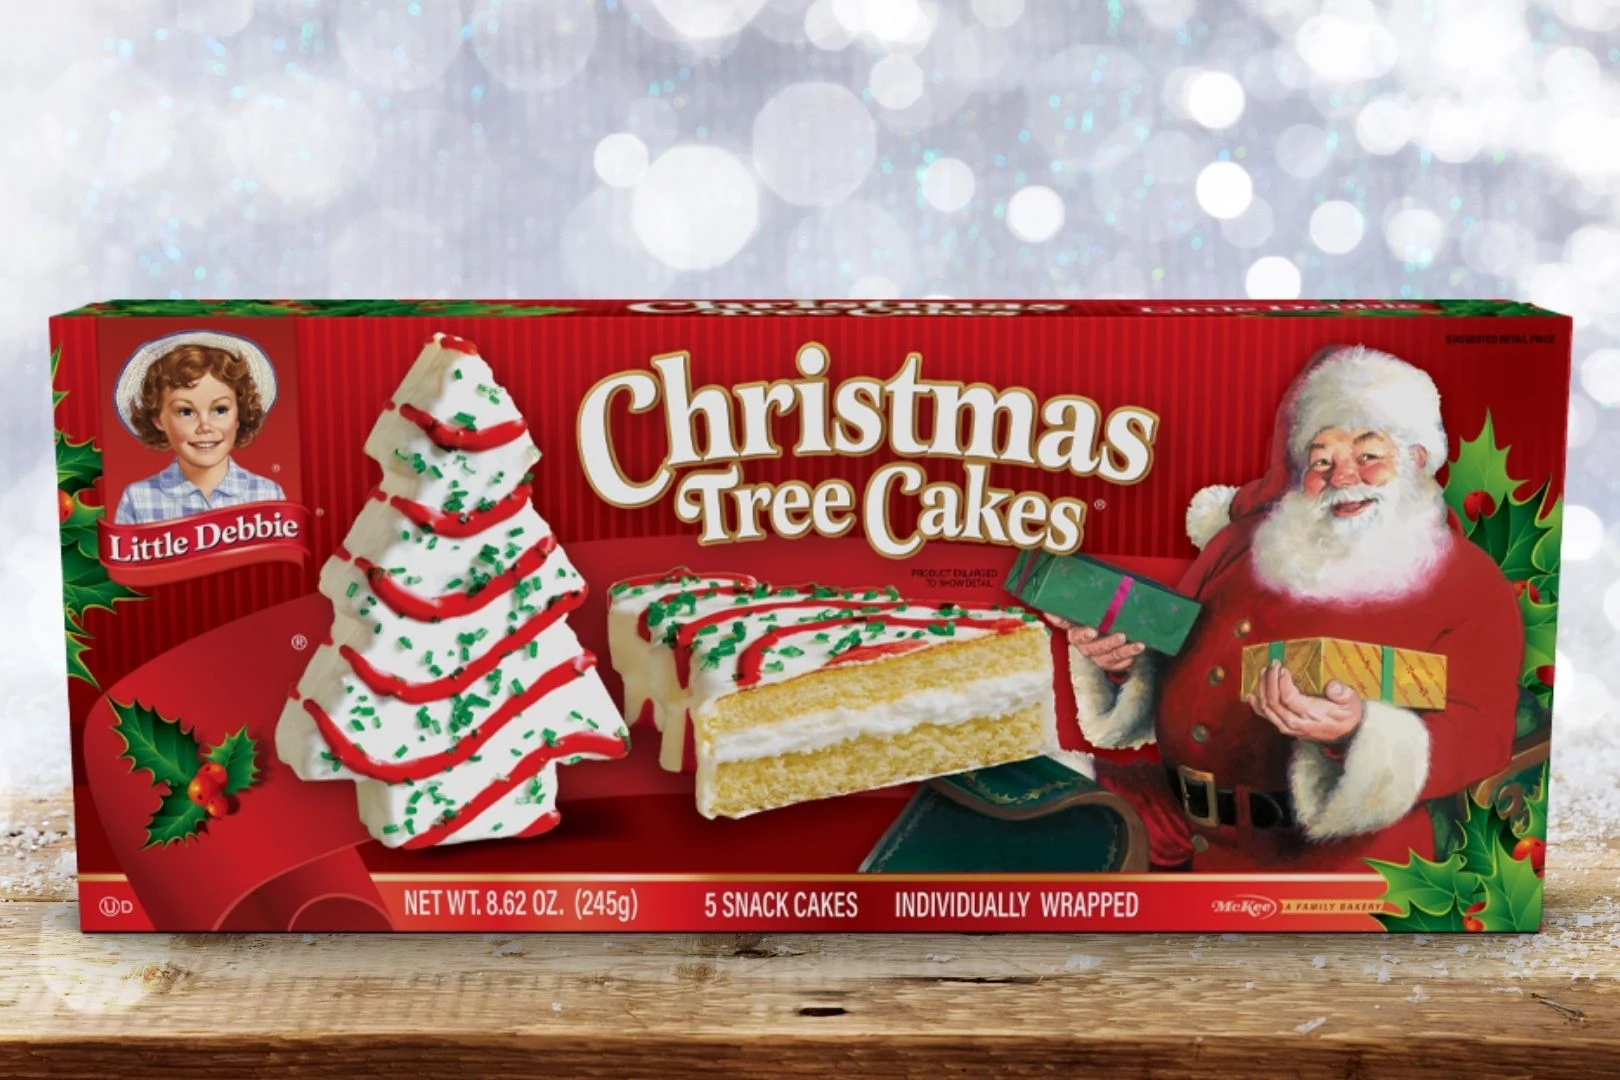 Little Debbie Red Velvet Christmas Tree Cakes 5 Count | Hy-Vee Aisles  Online Grocery Shopping